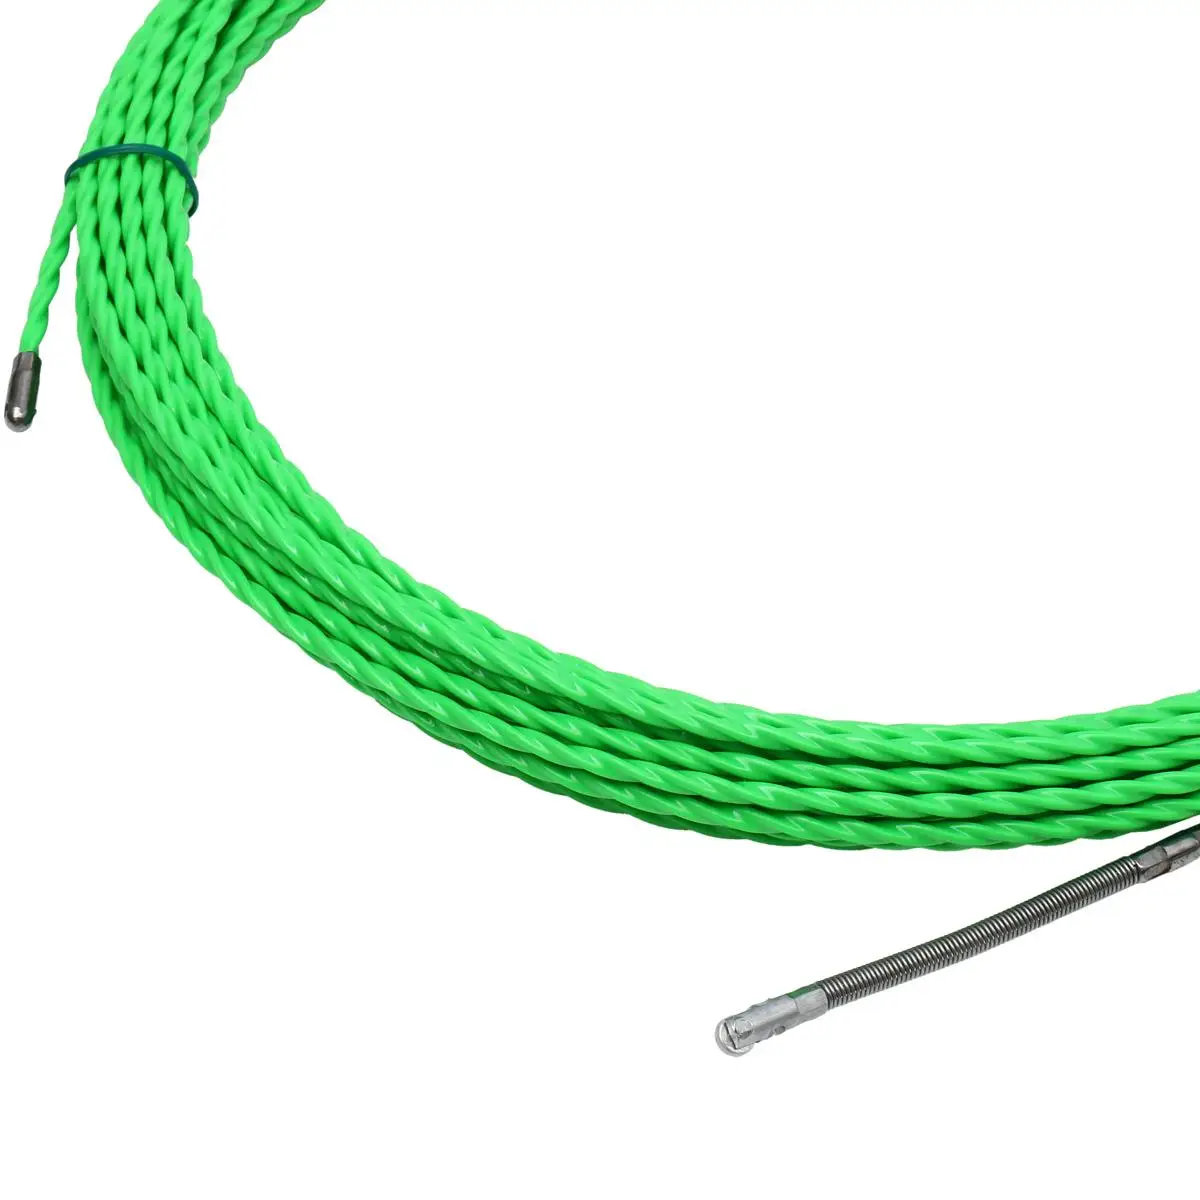 4 мм 10/20 Вт, 30 Вт, 50 м кабель из стекловолокна пуш-ап съемники канал змея роддер для протяжки проводов провода POM рыбы рисовать лента Электрический кабель Съемник